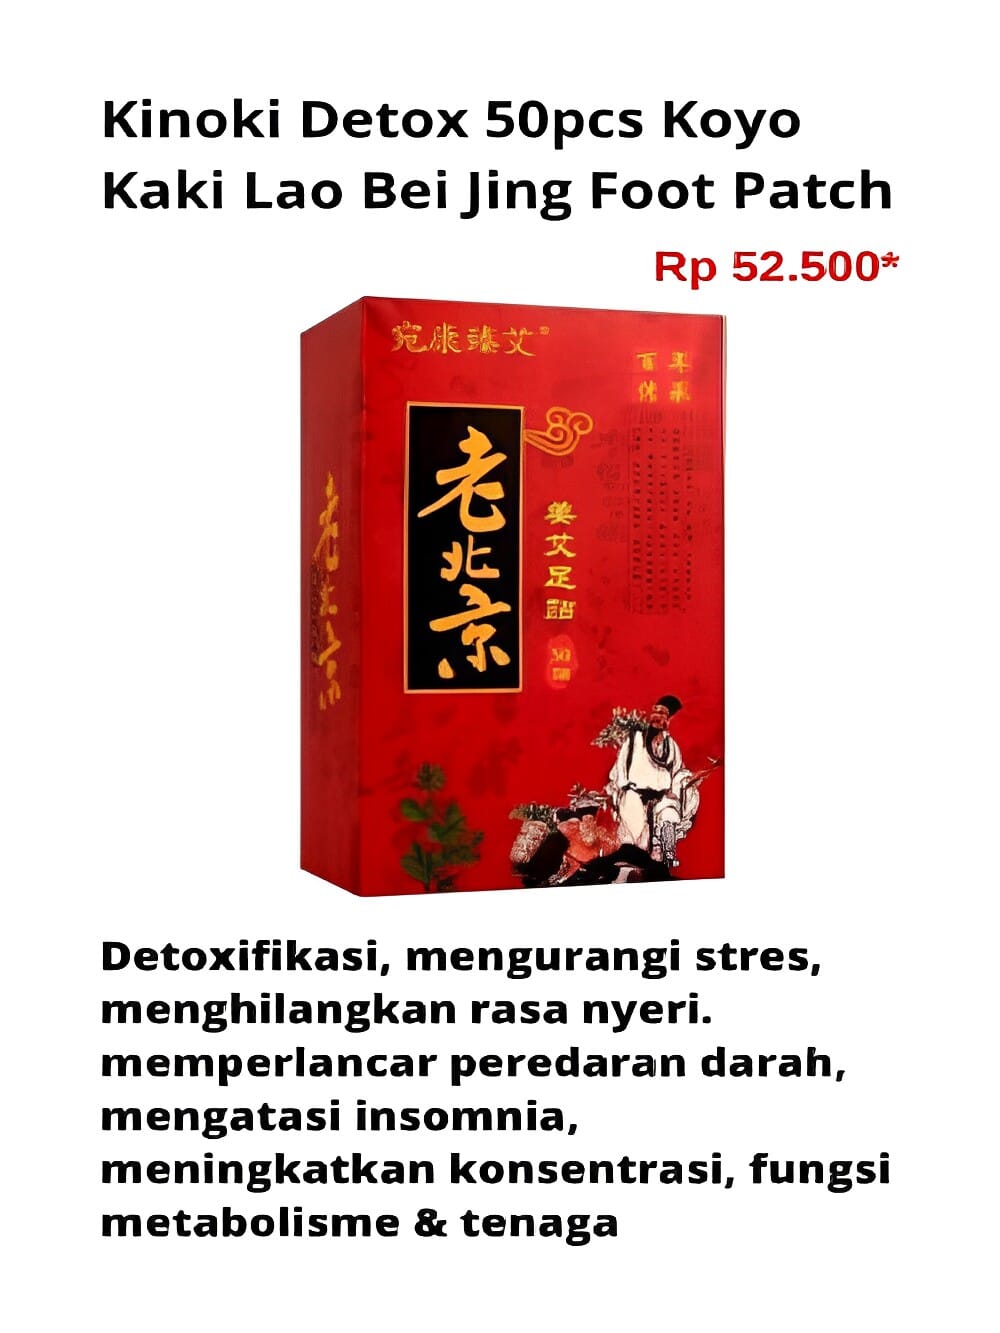 Gambar Kinoki Detox 50pcs Koyo Kaki Lao Bei Jing Foot Patch